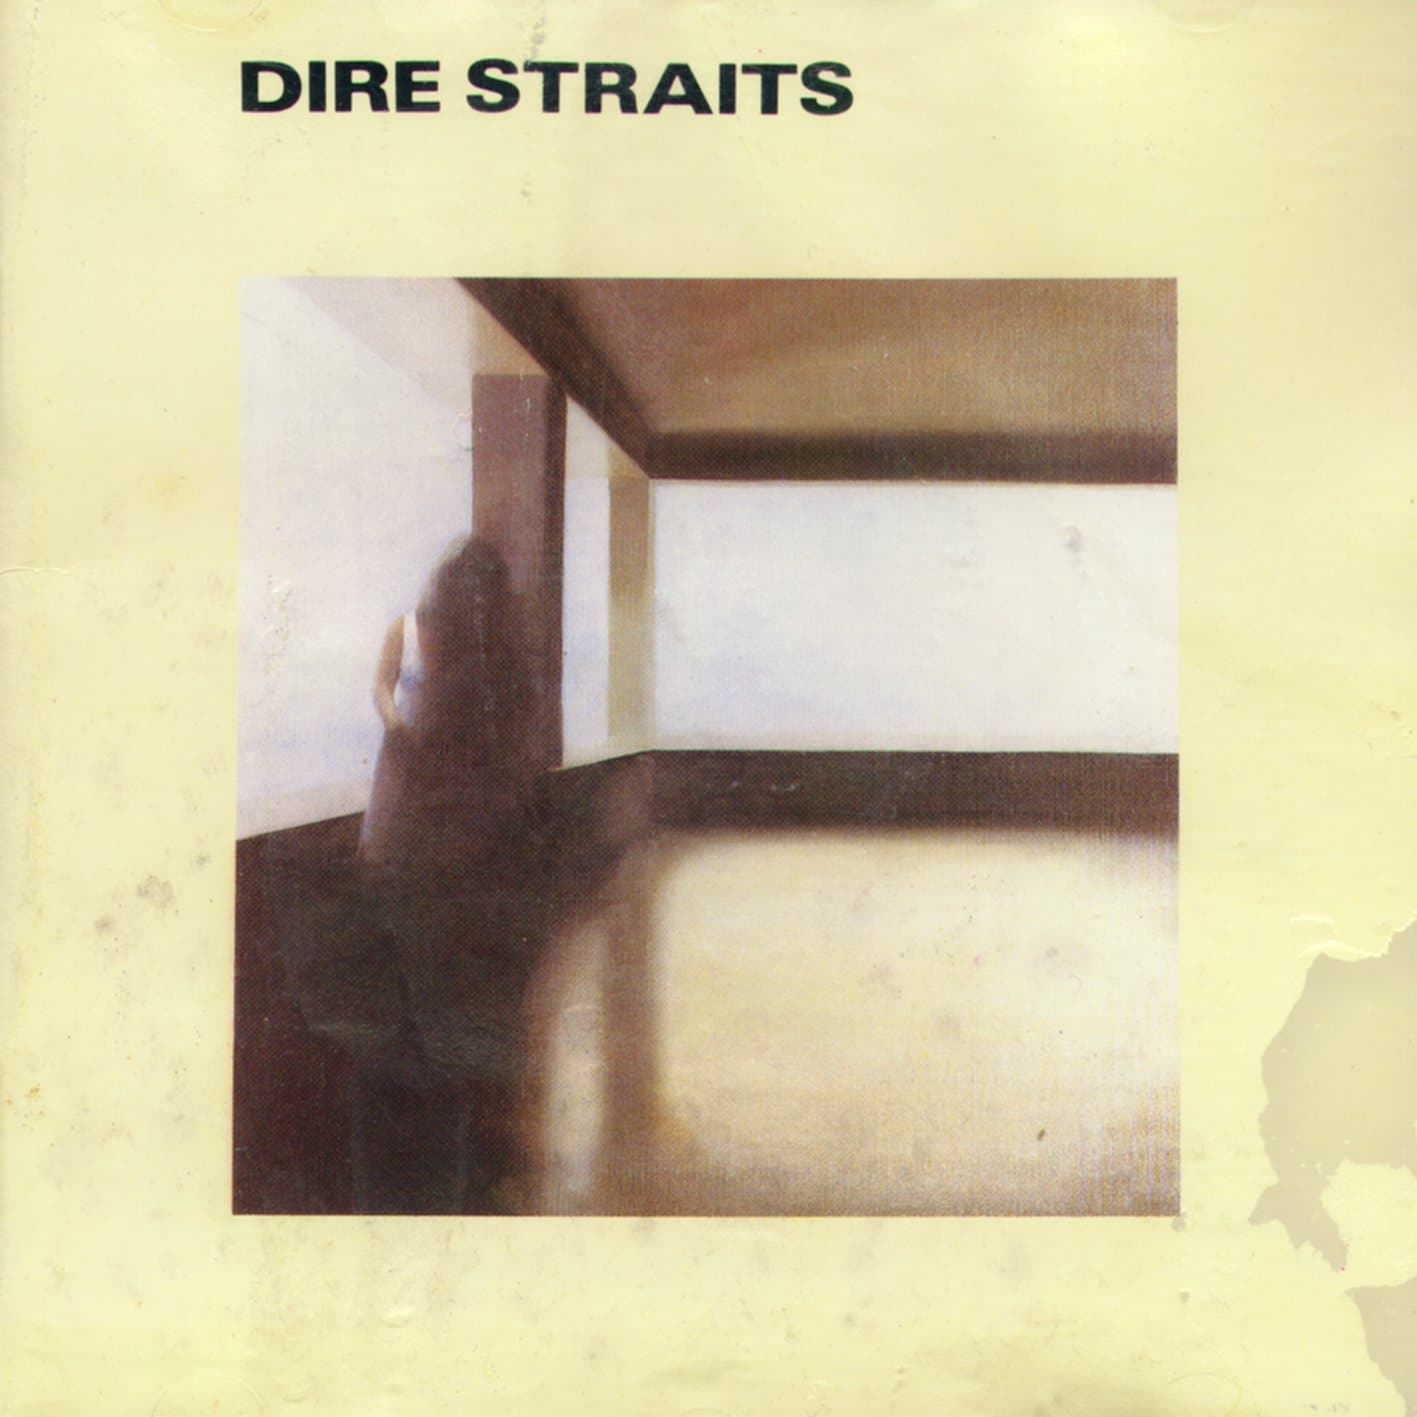 Dire Straits album